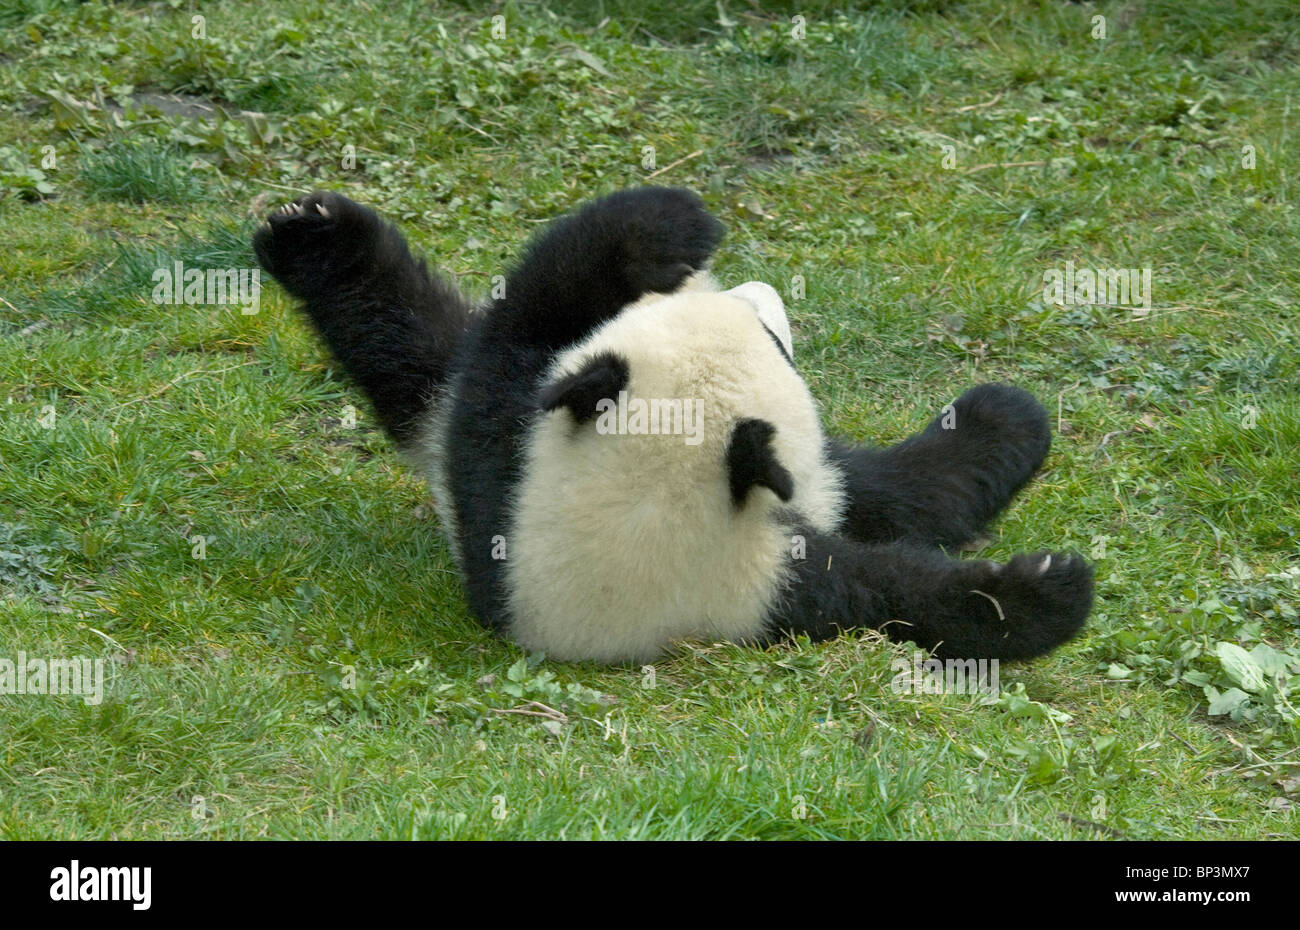 5 mes de edad panda gigante cub rollos en tierra, Wolong en China Foto de stock